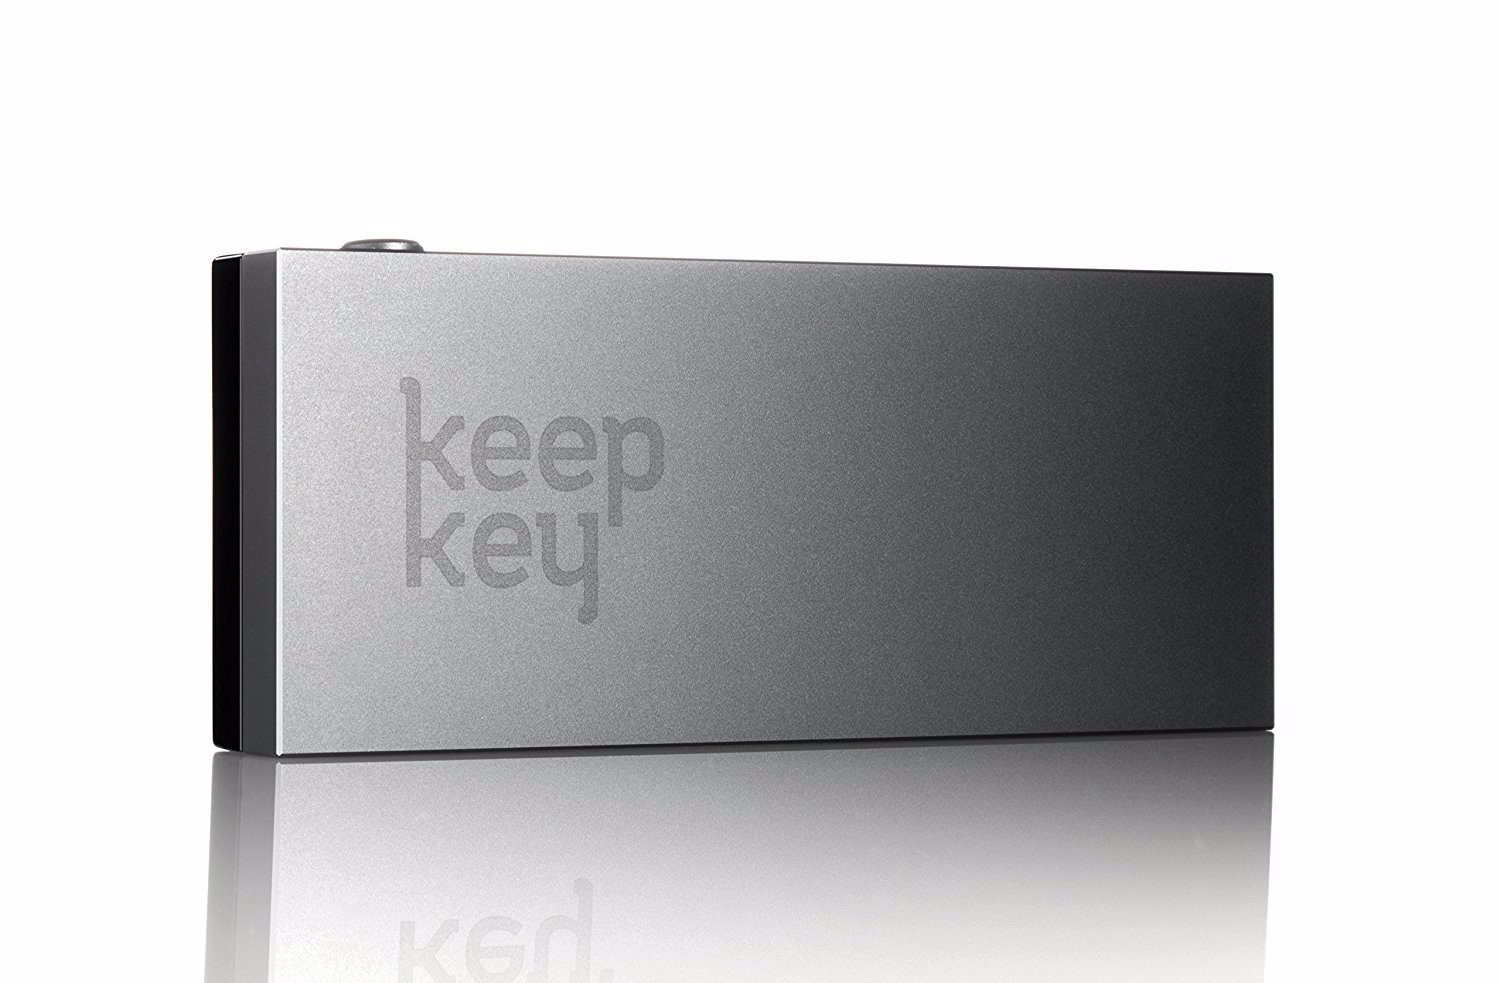 KeepKey hardware wallet image